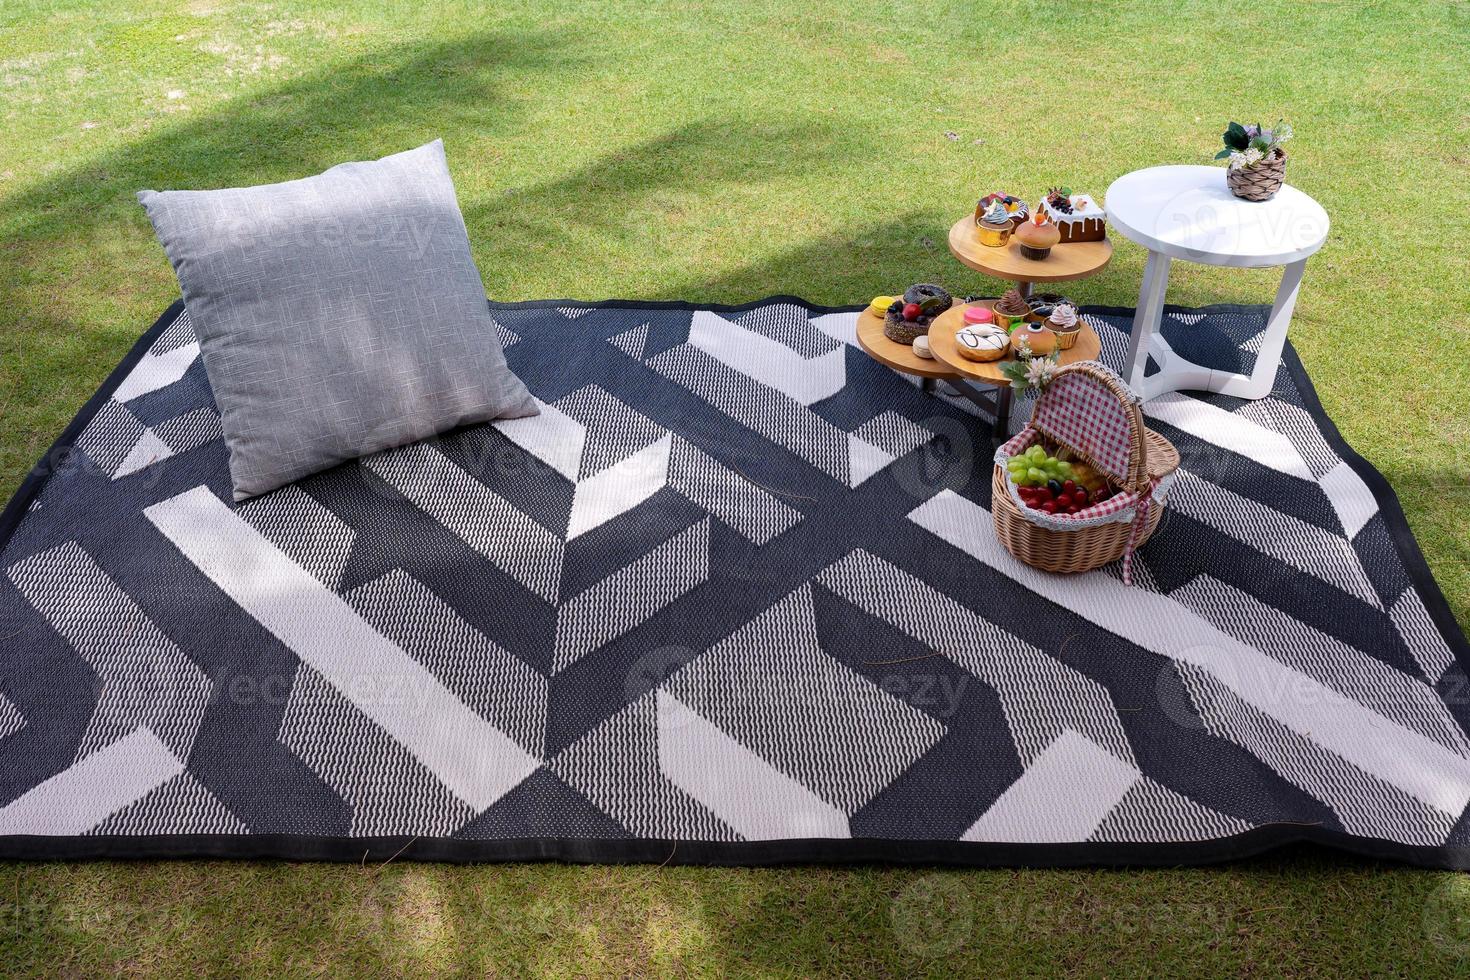 picknickset med litet bord med snacks och fruktkorg på matta med kudde i trädgården på grönt gräs foto